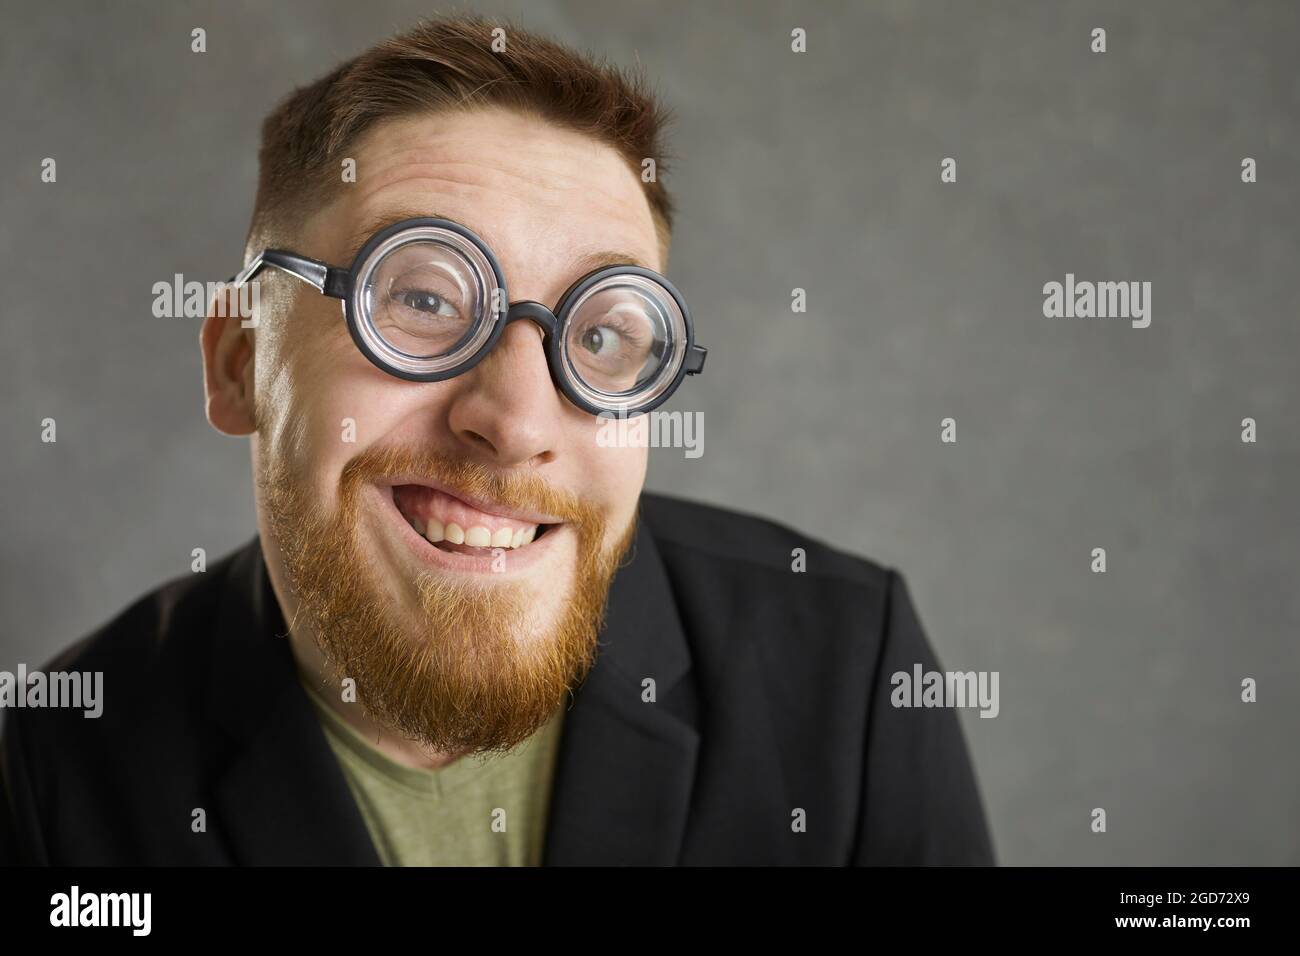 Nahaufnahme Porträt eines lustigen verrückten Nerds in runden Brillen lächelt auf die Kamera Stockfoto